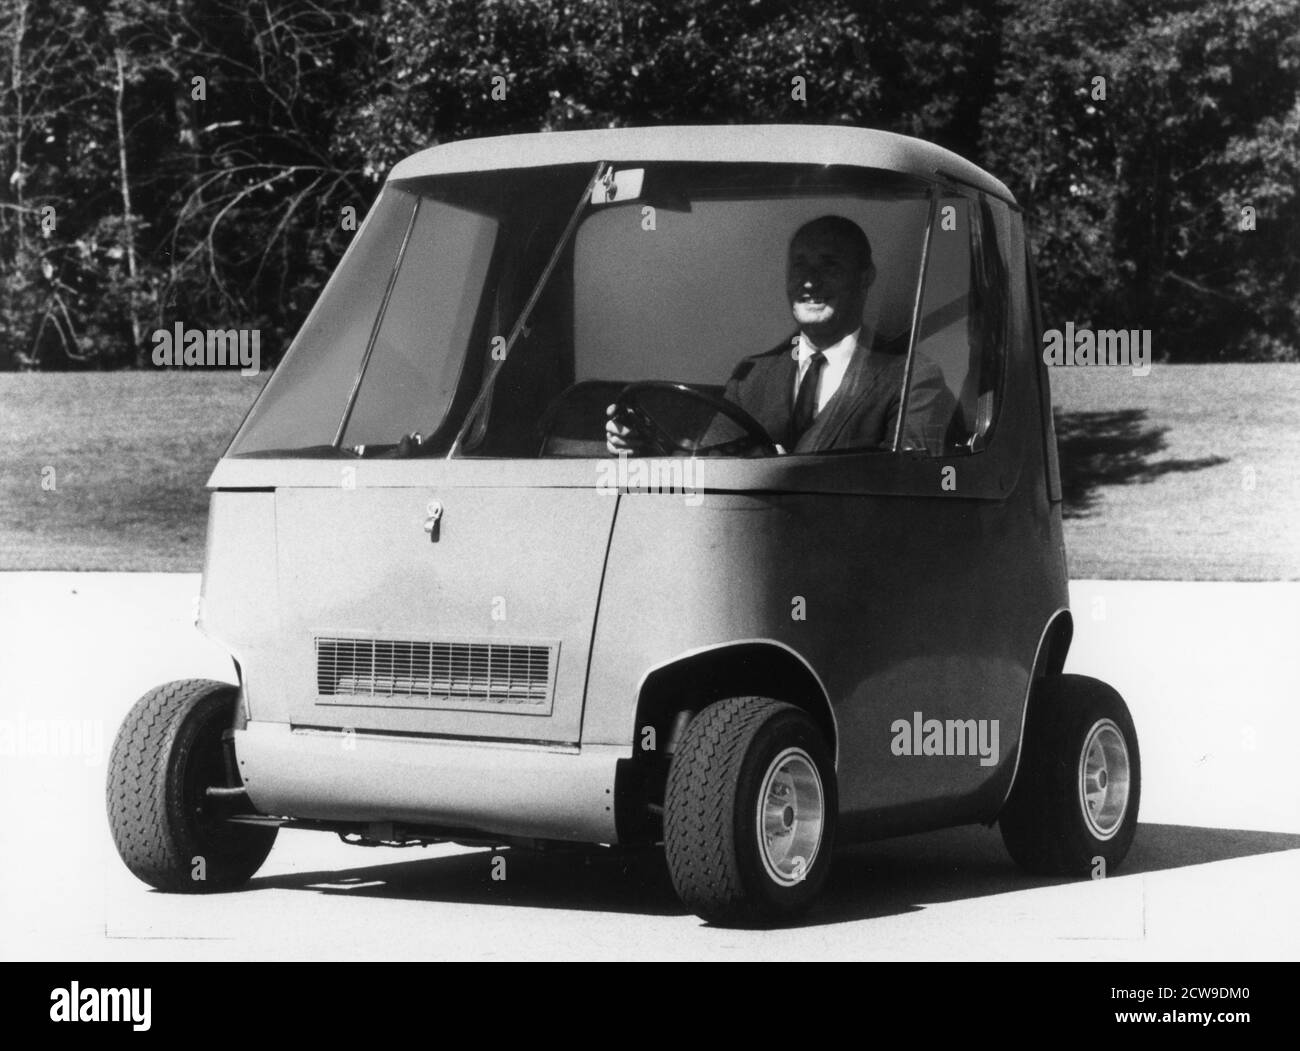 Prototyp eines General Motors Hybrid Autos startet und beschleunigt mit einem Elektromotor. Ein Benzinmotor übernimmt bei 16 km/h und lädt auch Batterie, Detroit, MI, um 1970. (Foto von General Motors/United States Information Agency/RBM Vintage Images) Stockfoto